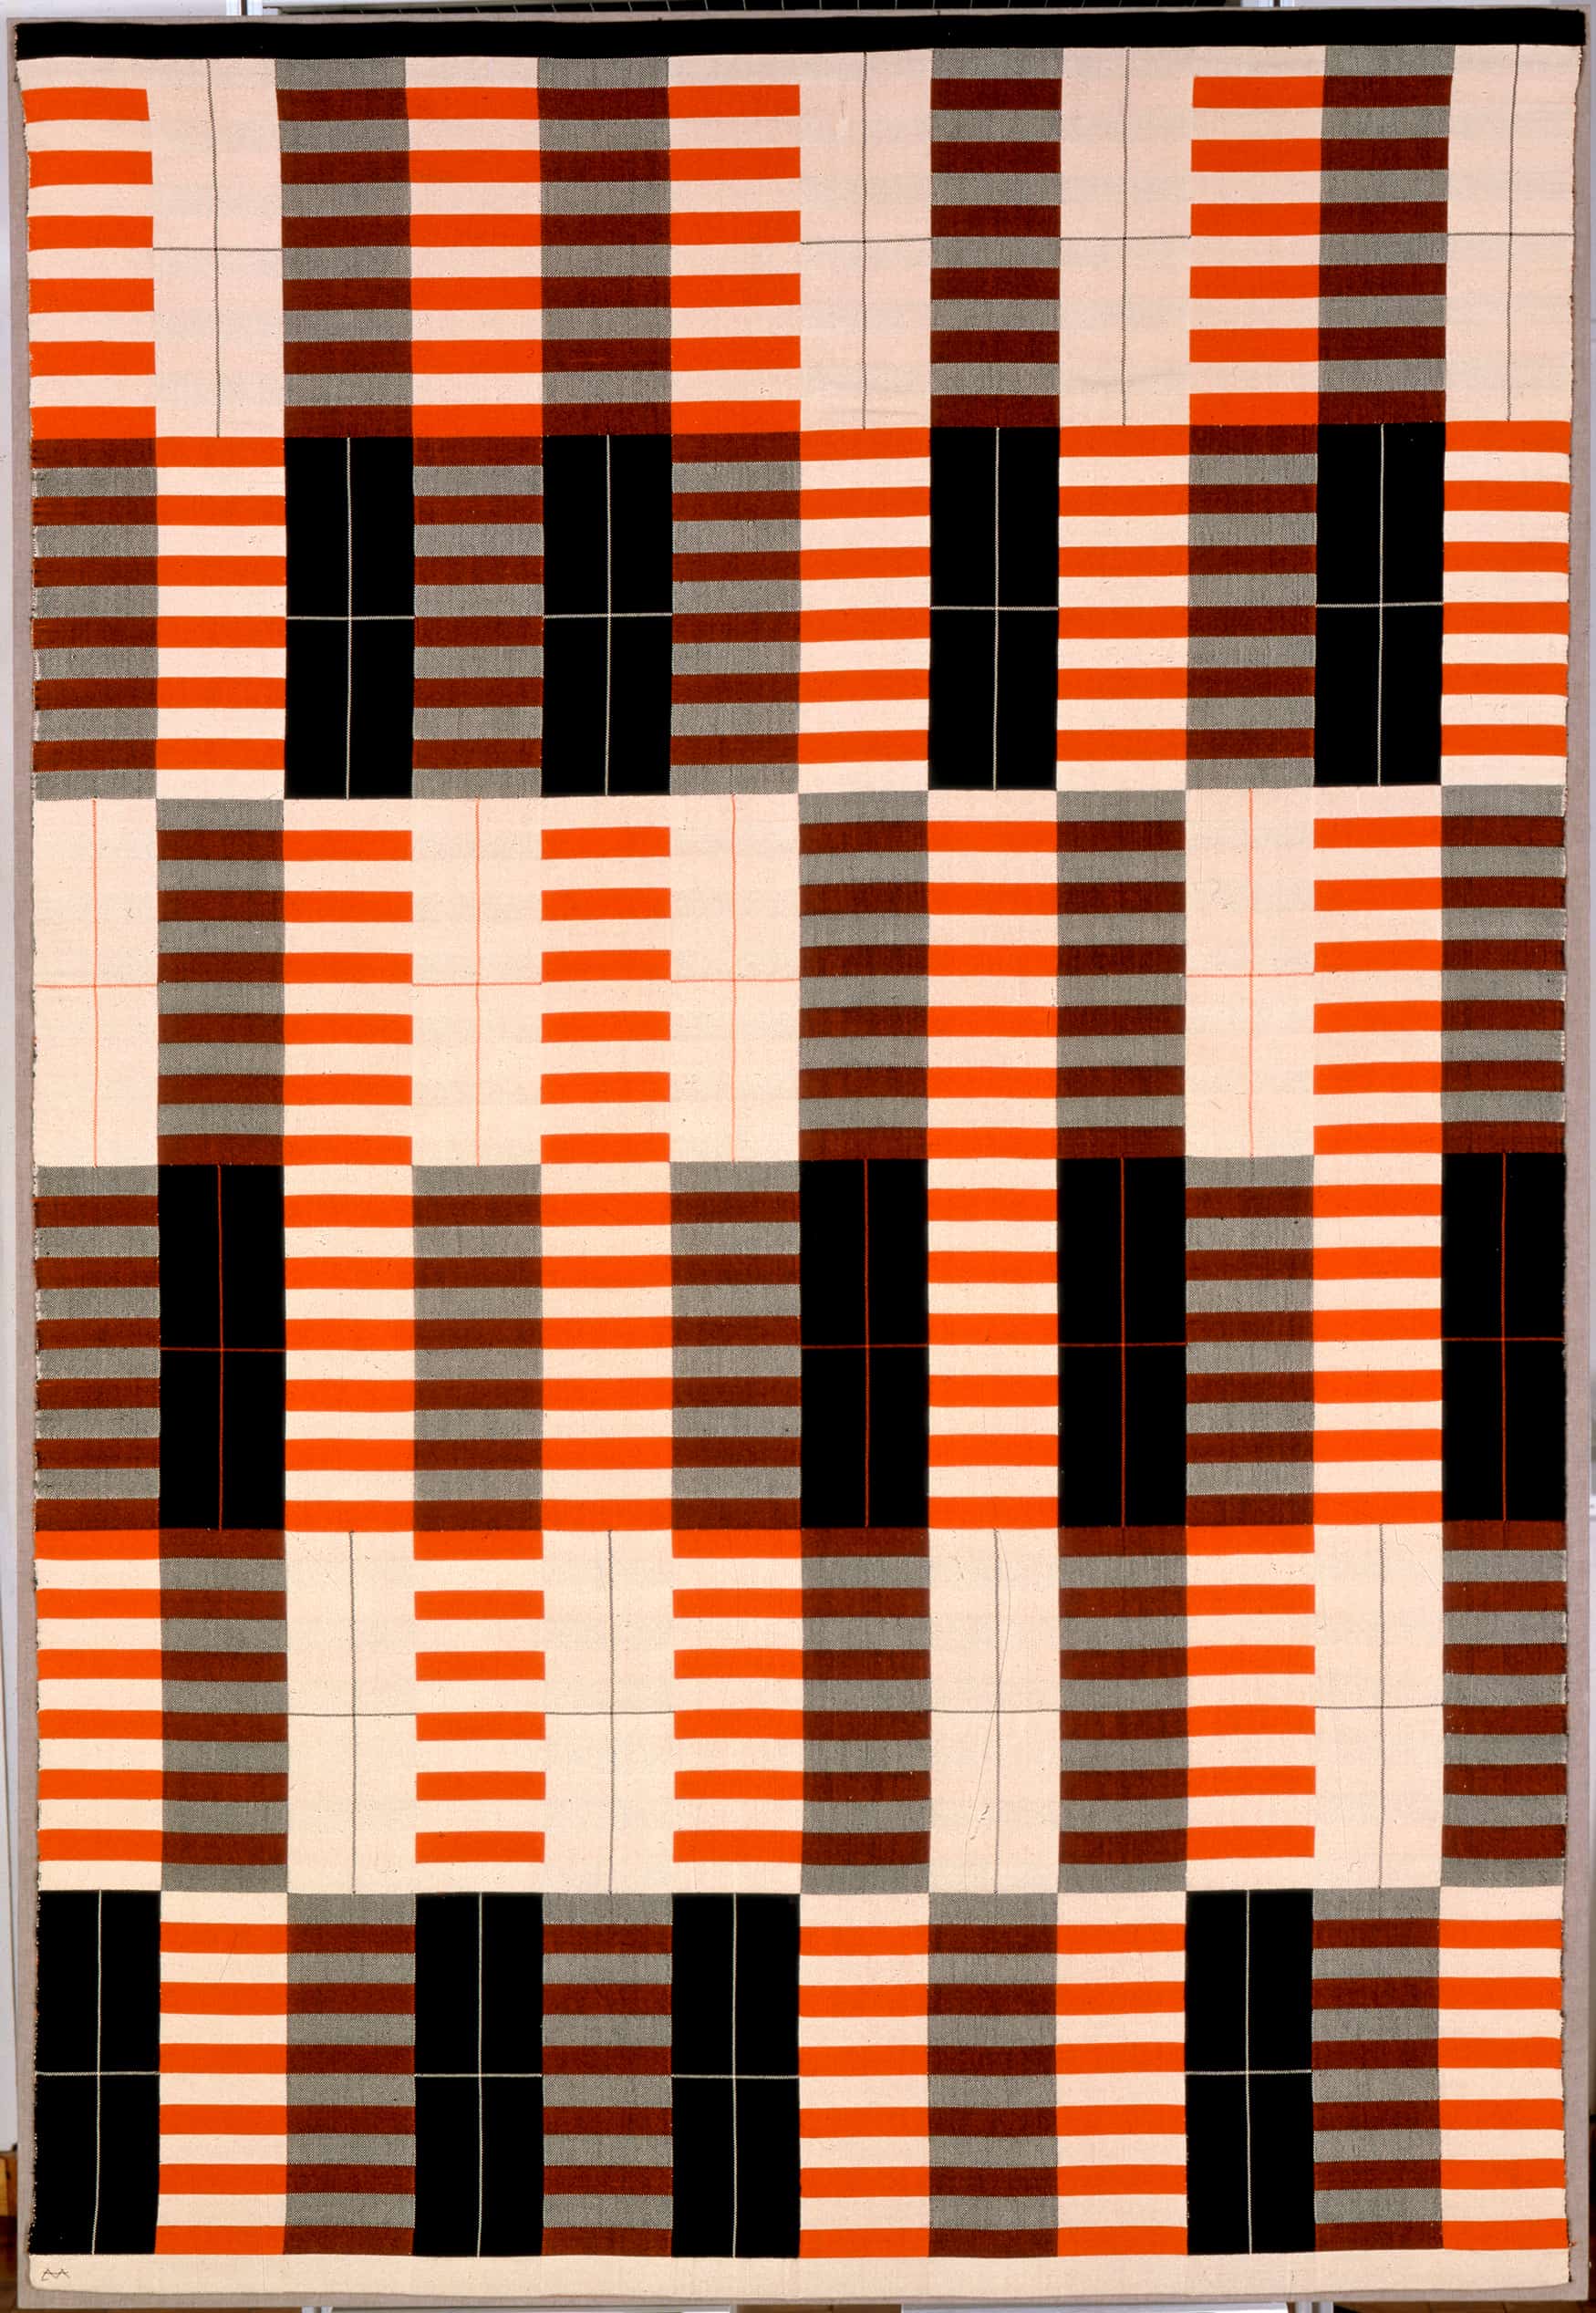 Archivbild. Ein gewebter Teppich, der aus horizontal und vertikal verlaufenden geometrischen Linien besteht.